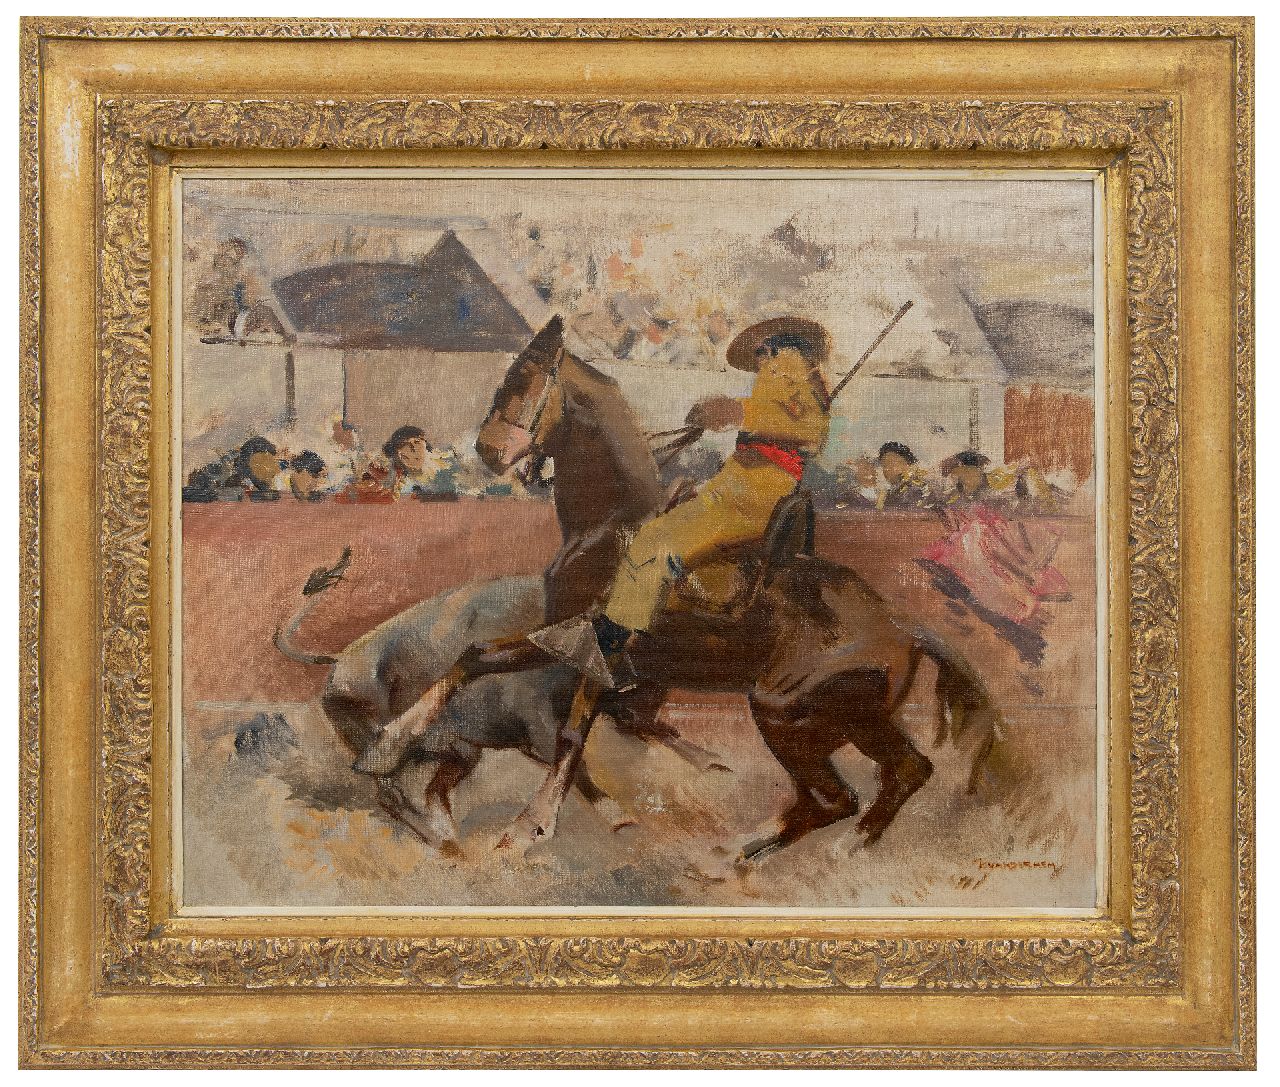 Hem P. van der | Pieter 'Piet' van der Hem, Stierengevecht, olieverf op doek 61,5 x 77,2 cm, gesigneerd r.o